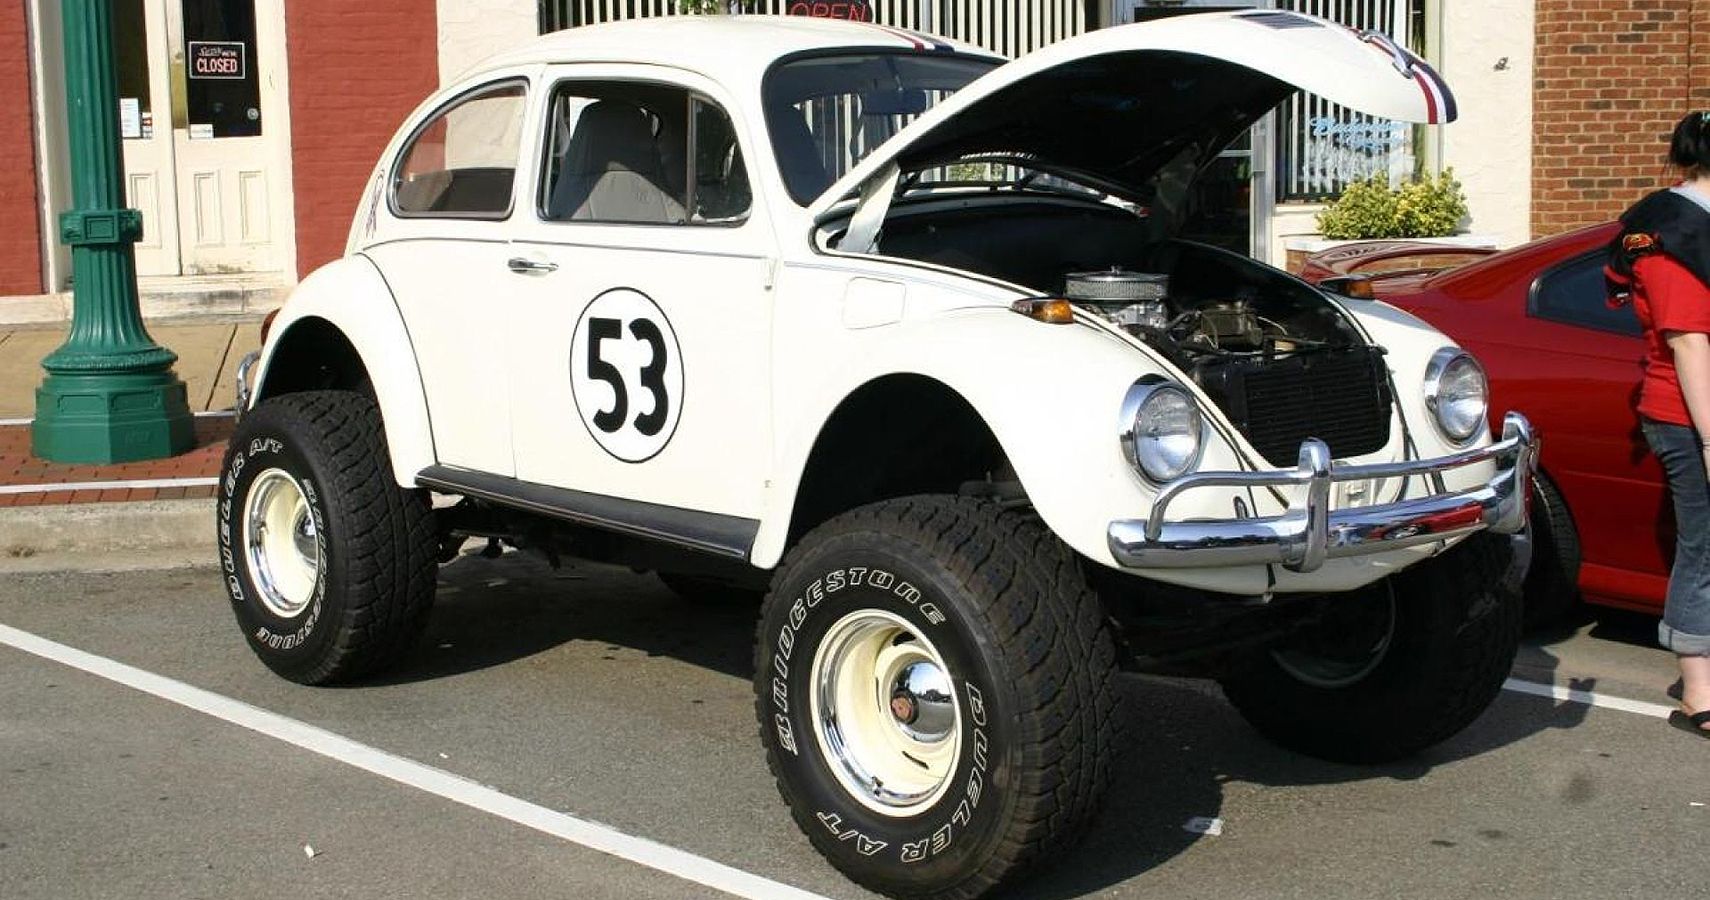 Bicho confundido: ¿Monstruo Herbie?